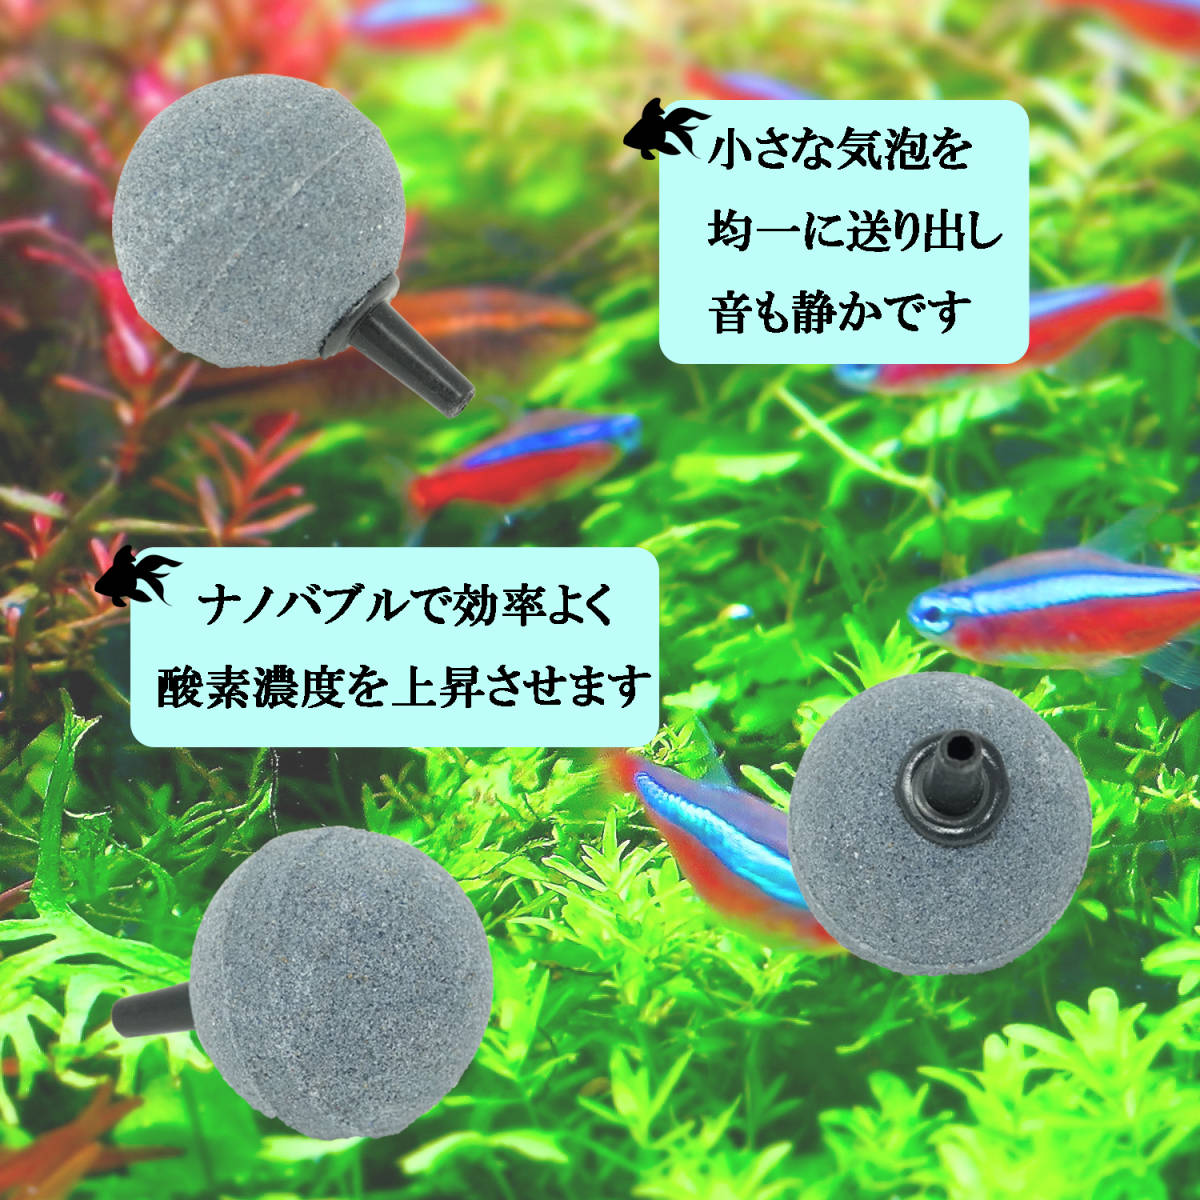  воздушный Stone *30mm шар ~30 шт. комплект ~bkbk воздушный Stone тропическая рыба оризия золотая рыбка кислород снабжение .